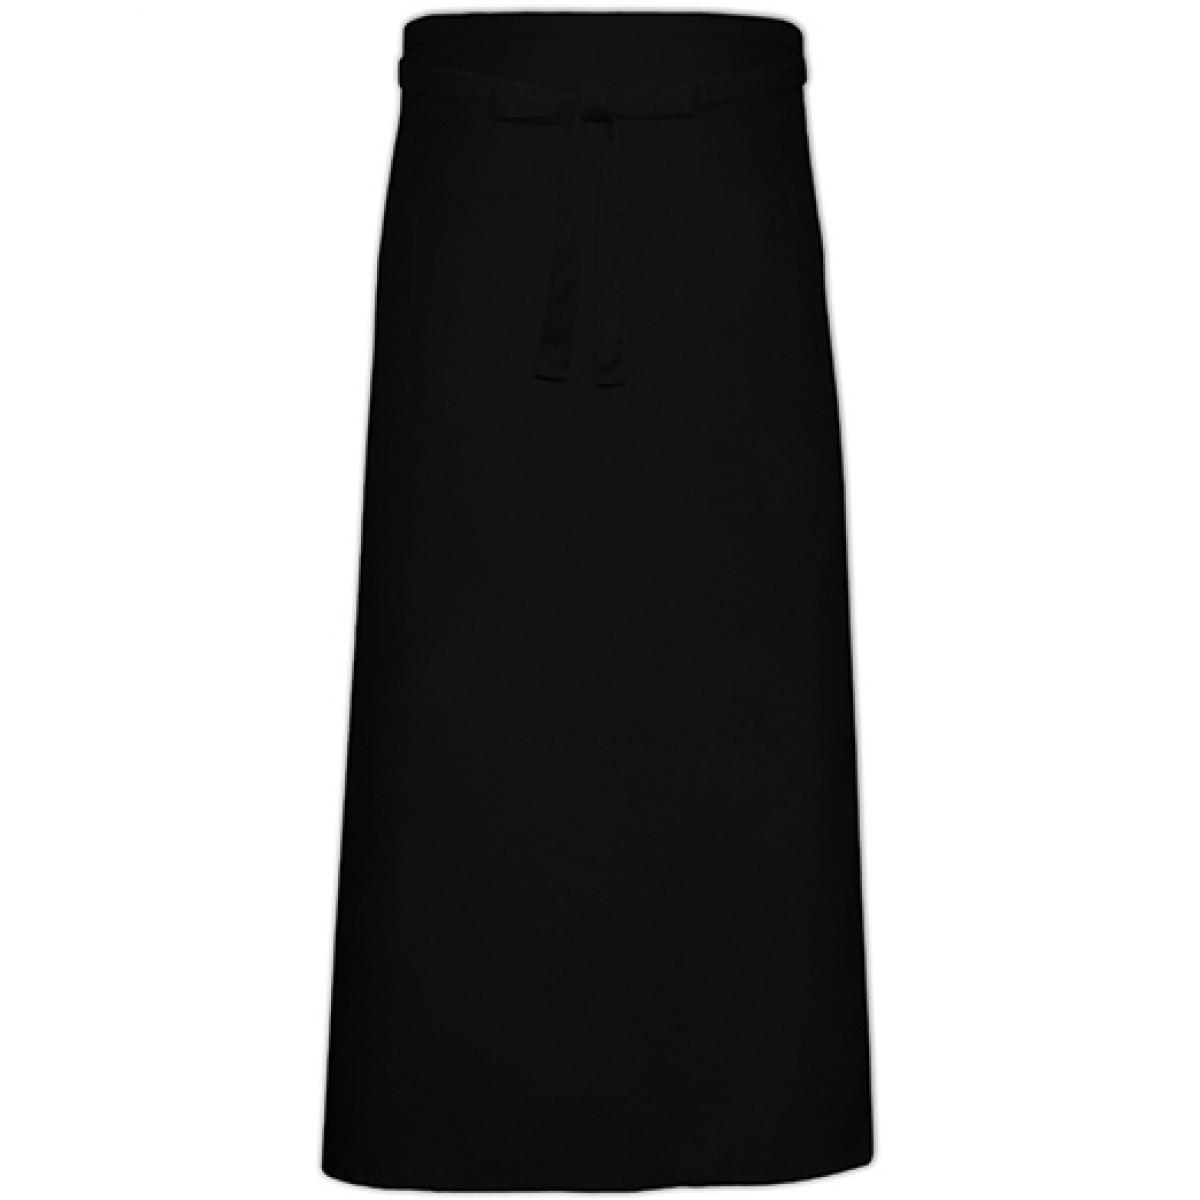 Hersteller: Link Kitchen Wear Herstellernummer: FS100120 Z Artikelbezeichnung: Bistro Apron XL with Front Pocket - 120 x 100 cm Farbe: Black